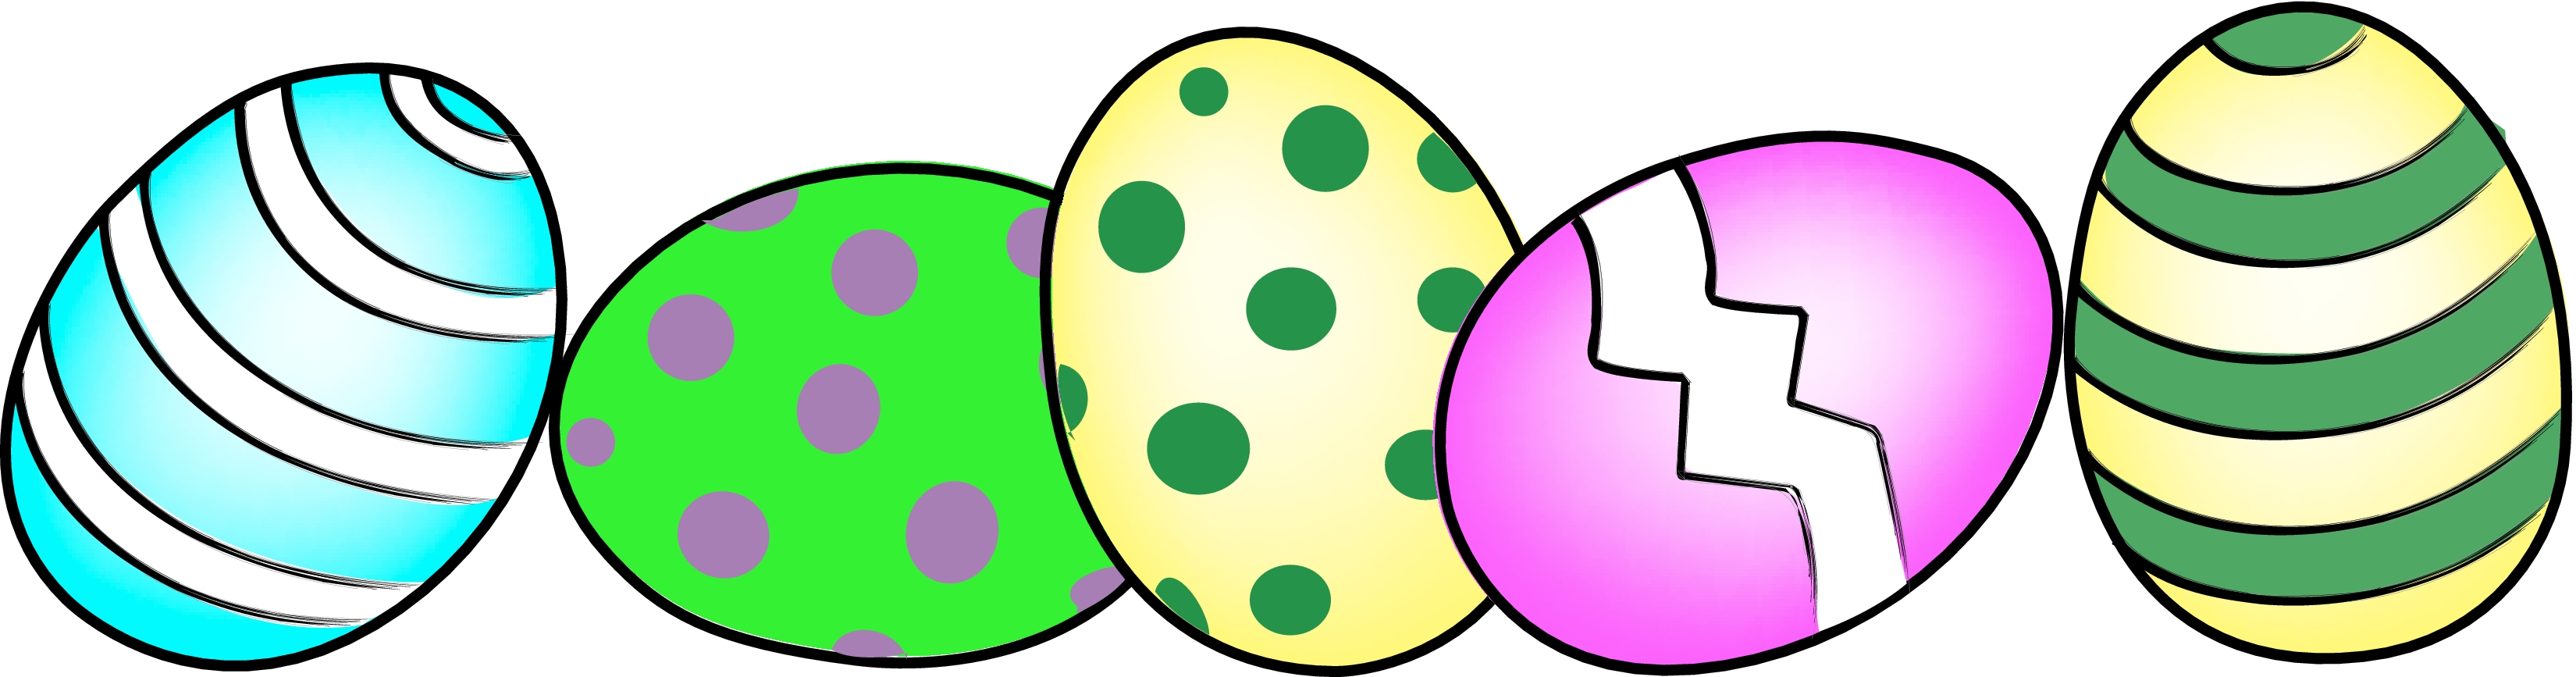 Easter Egg Hunt Clip Art